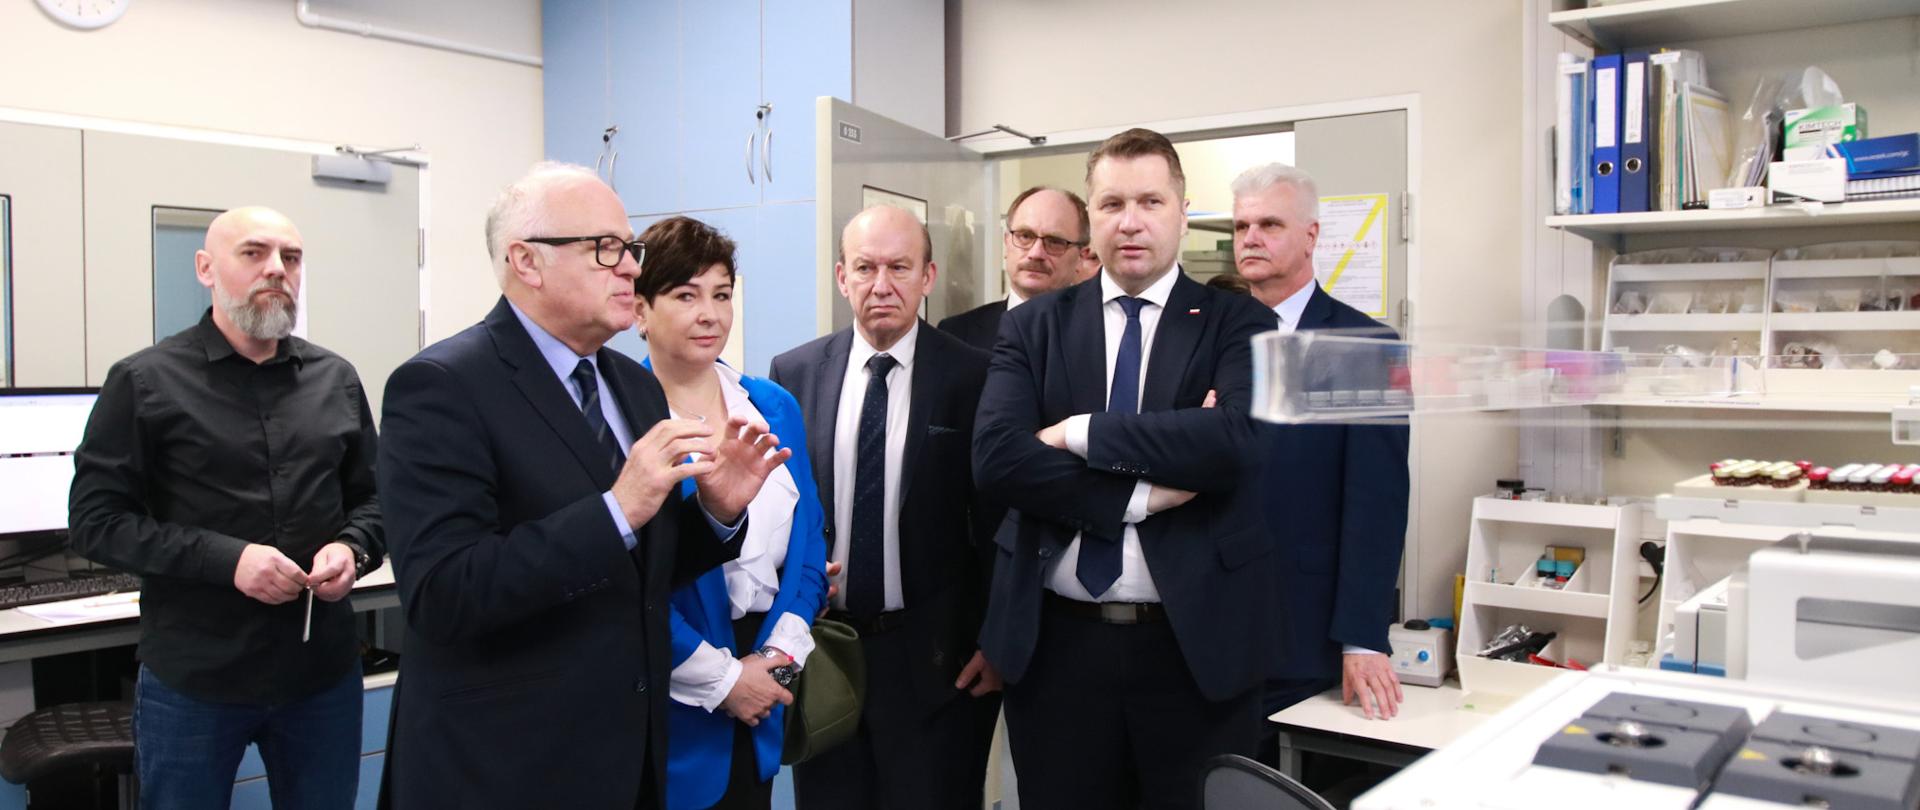 Minister Czarnek w otoczeniu mężczyzn w czarnych garniturach stoi w pomieszczeniu laboratorium, obok niego kobieta w niebieskiej marynarce, pod białymi ścianami stoją różne urządzenia.